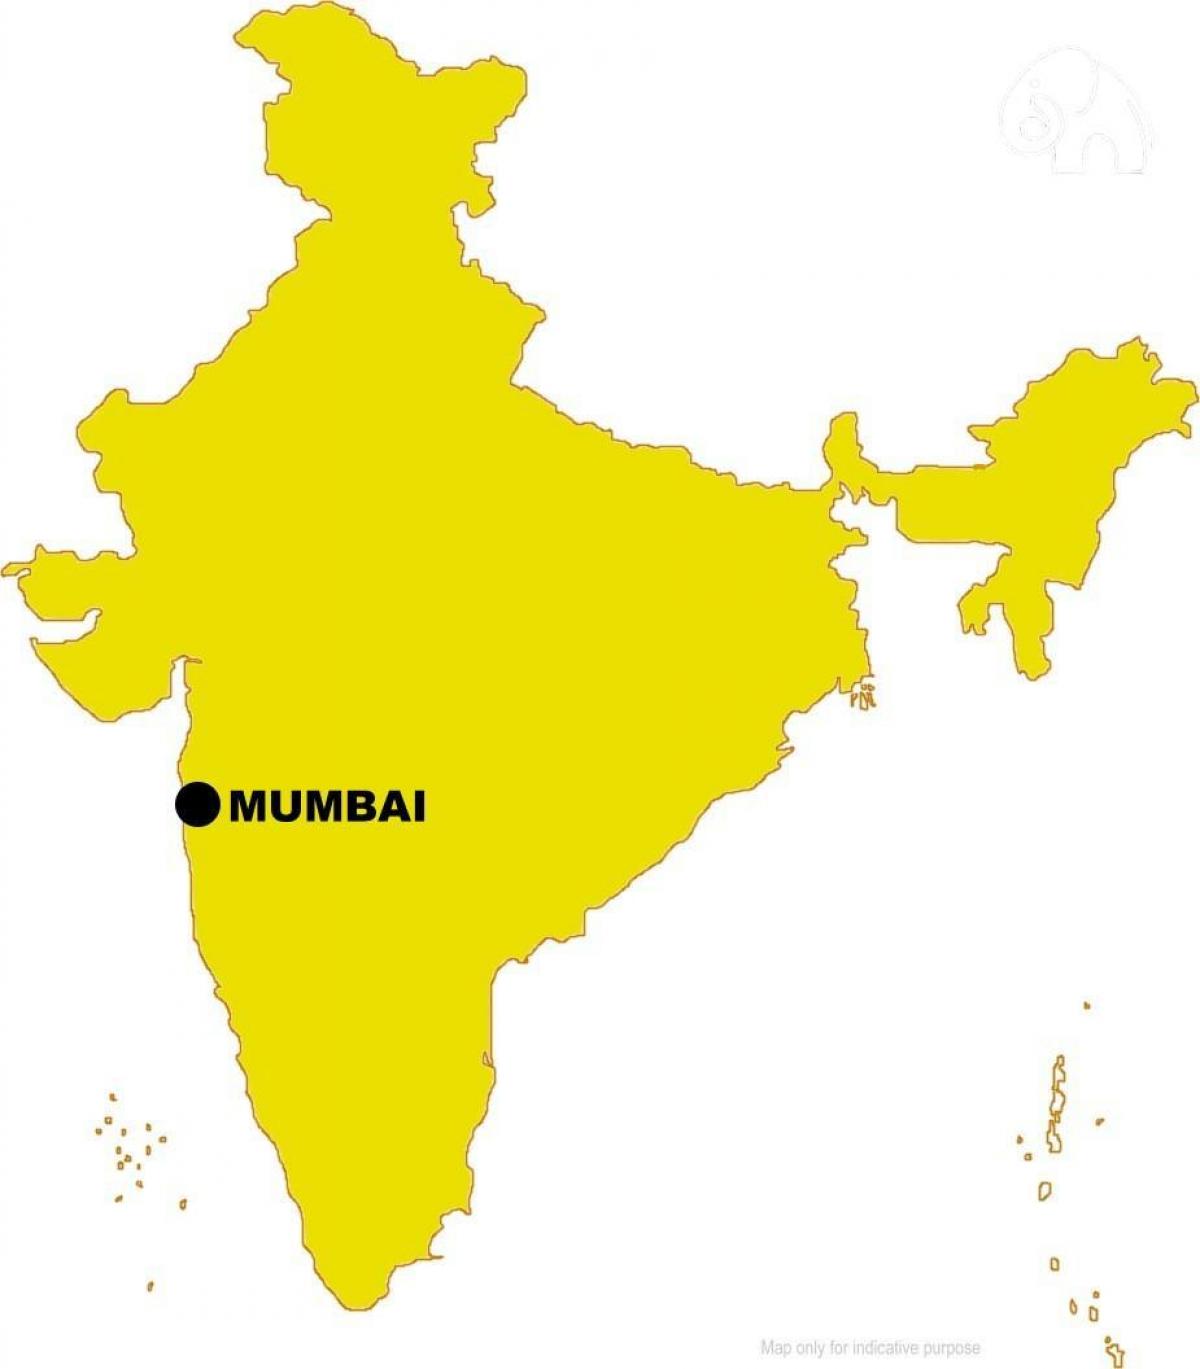 مومباي في الخريطة